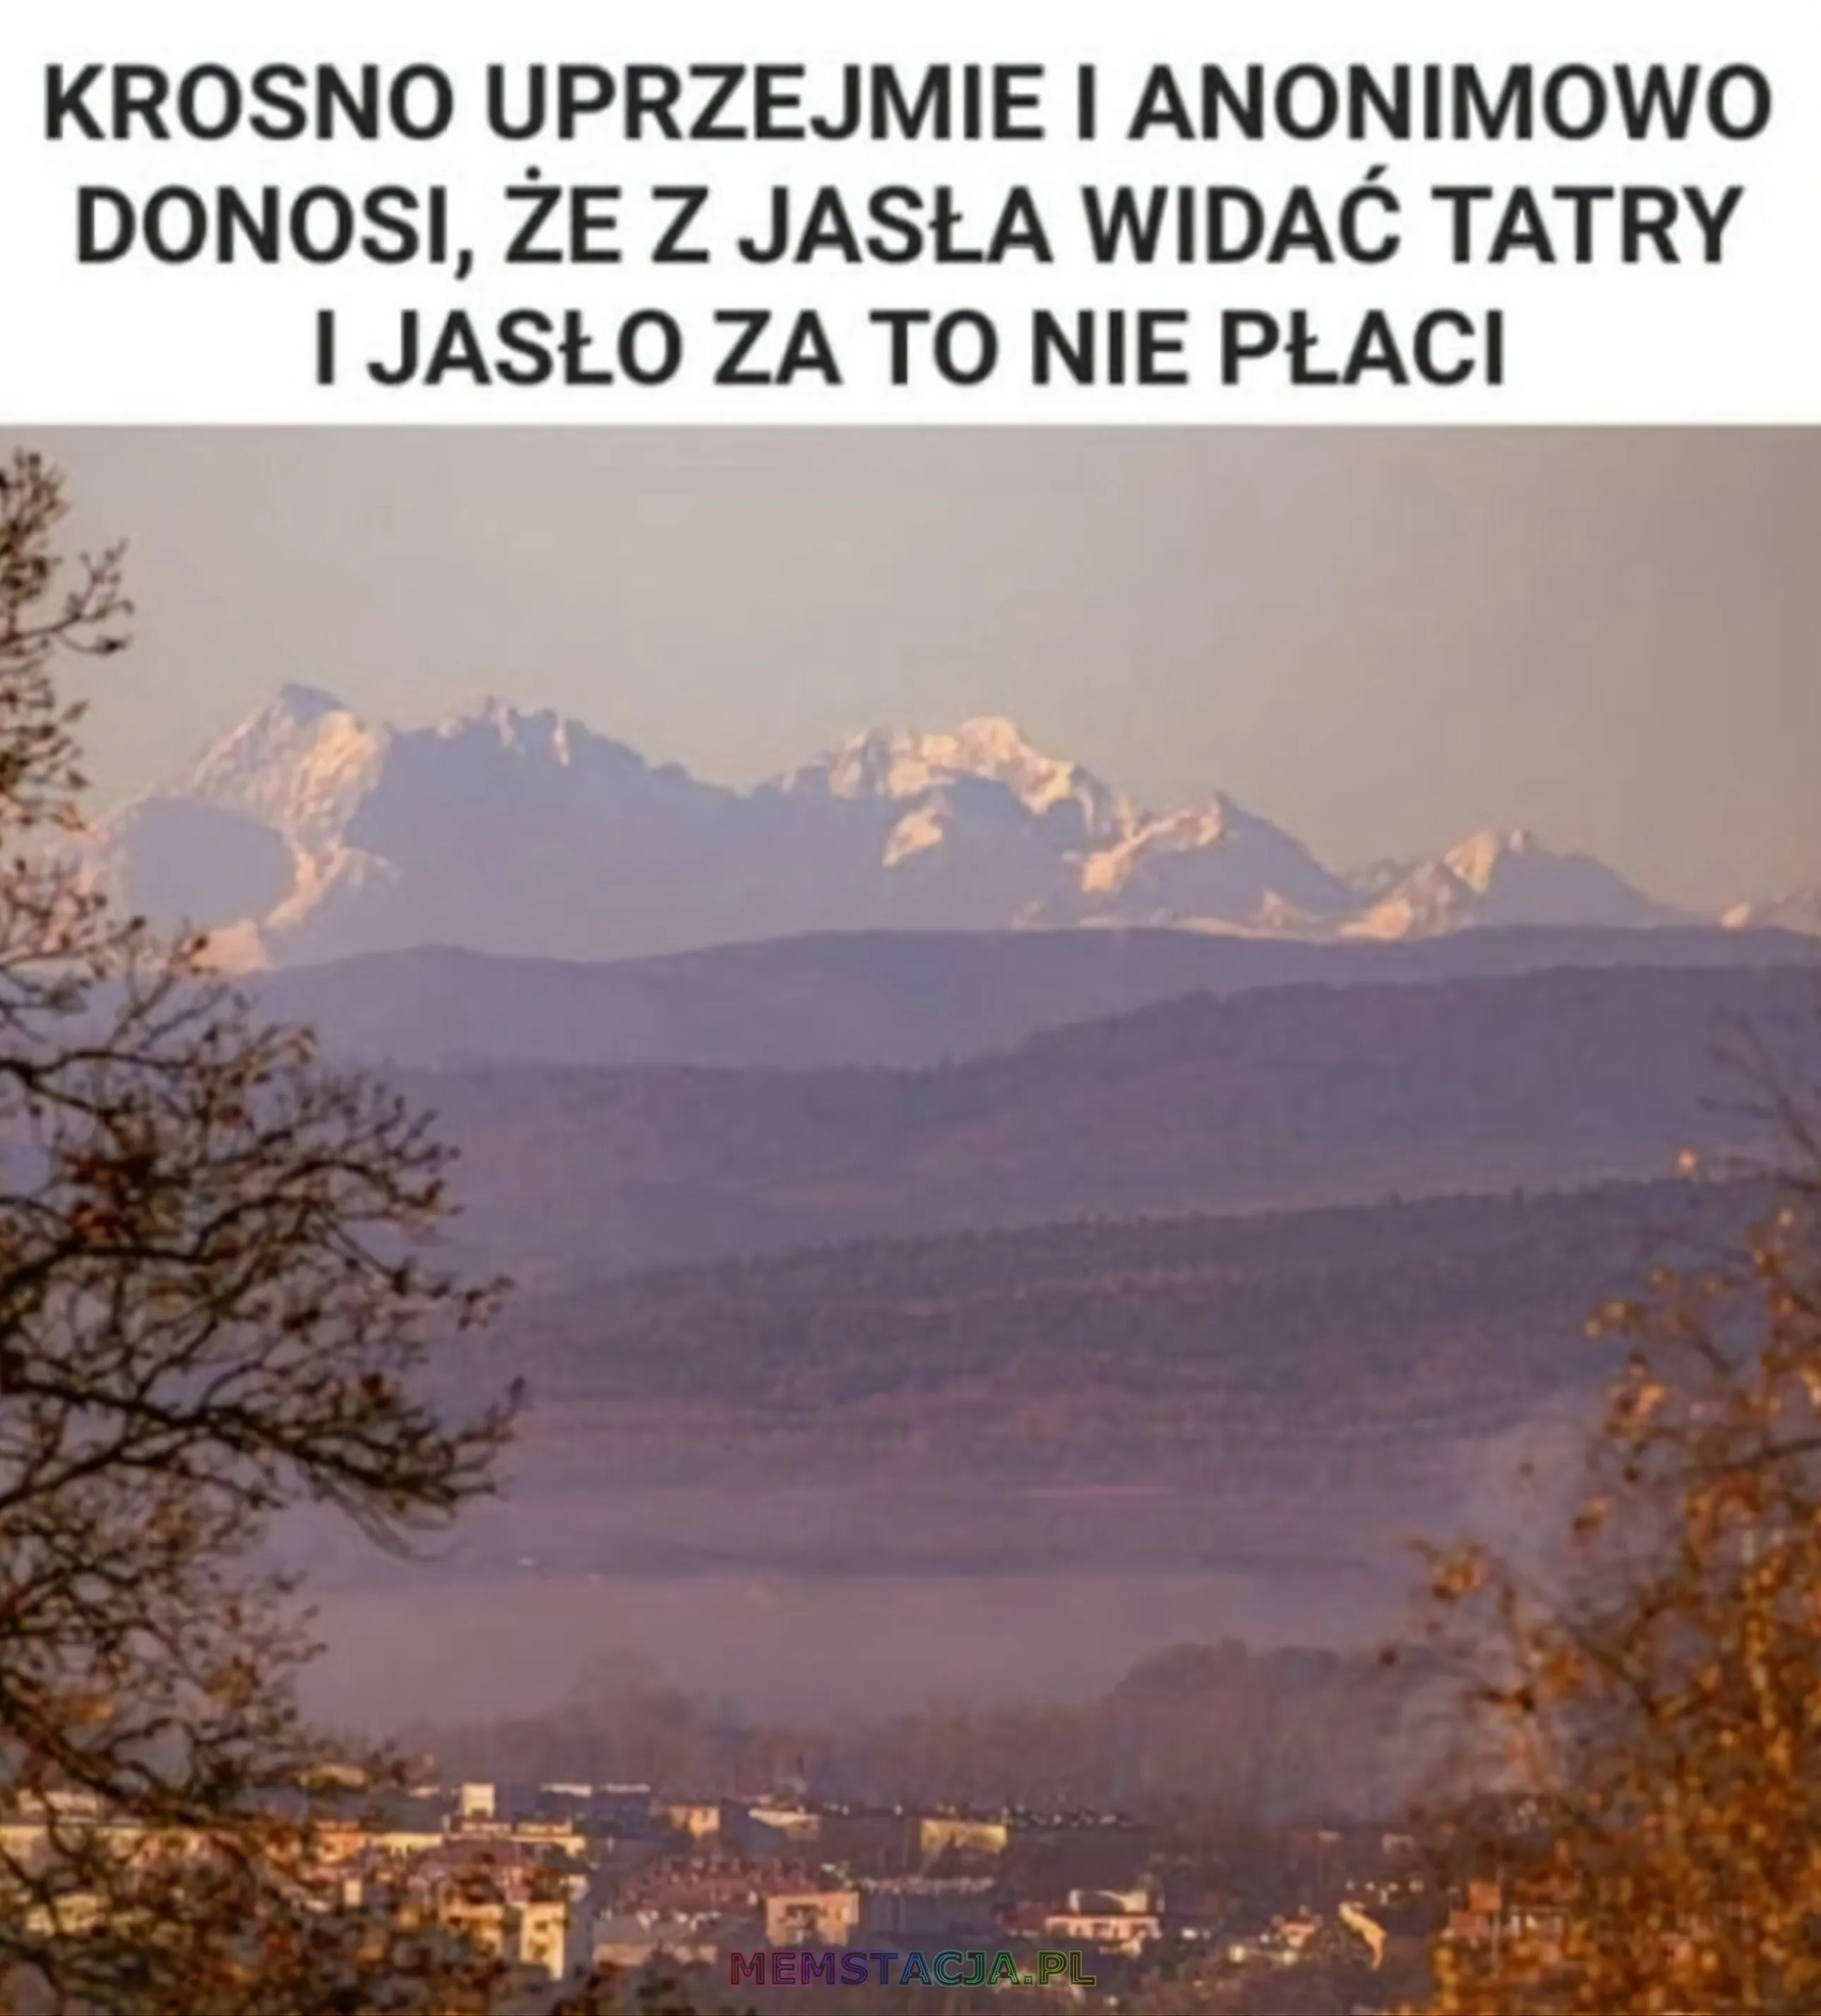 Zdjęcie widoku na Tatry z Jasła: 'Krosno uprzejmie i anonimowo donosi, że z jasła widać tatry i Jasło za to nie płaci'